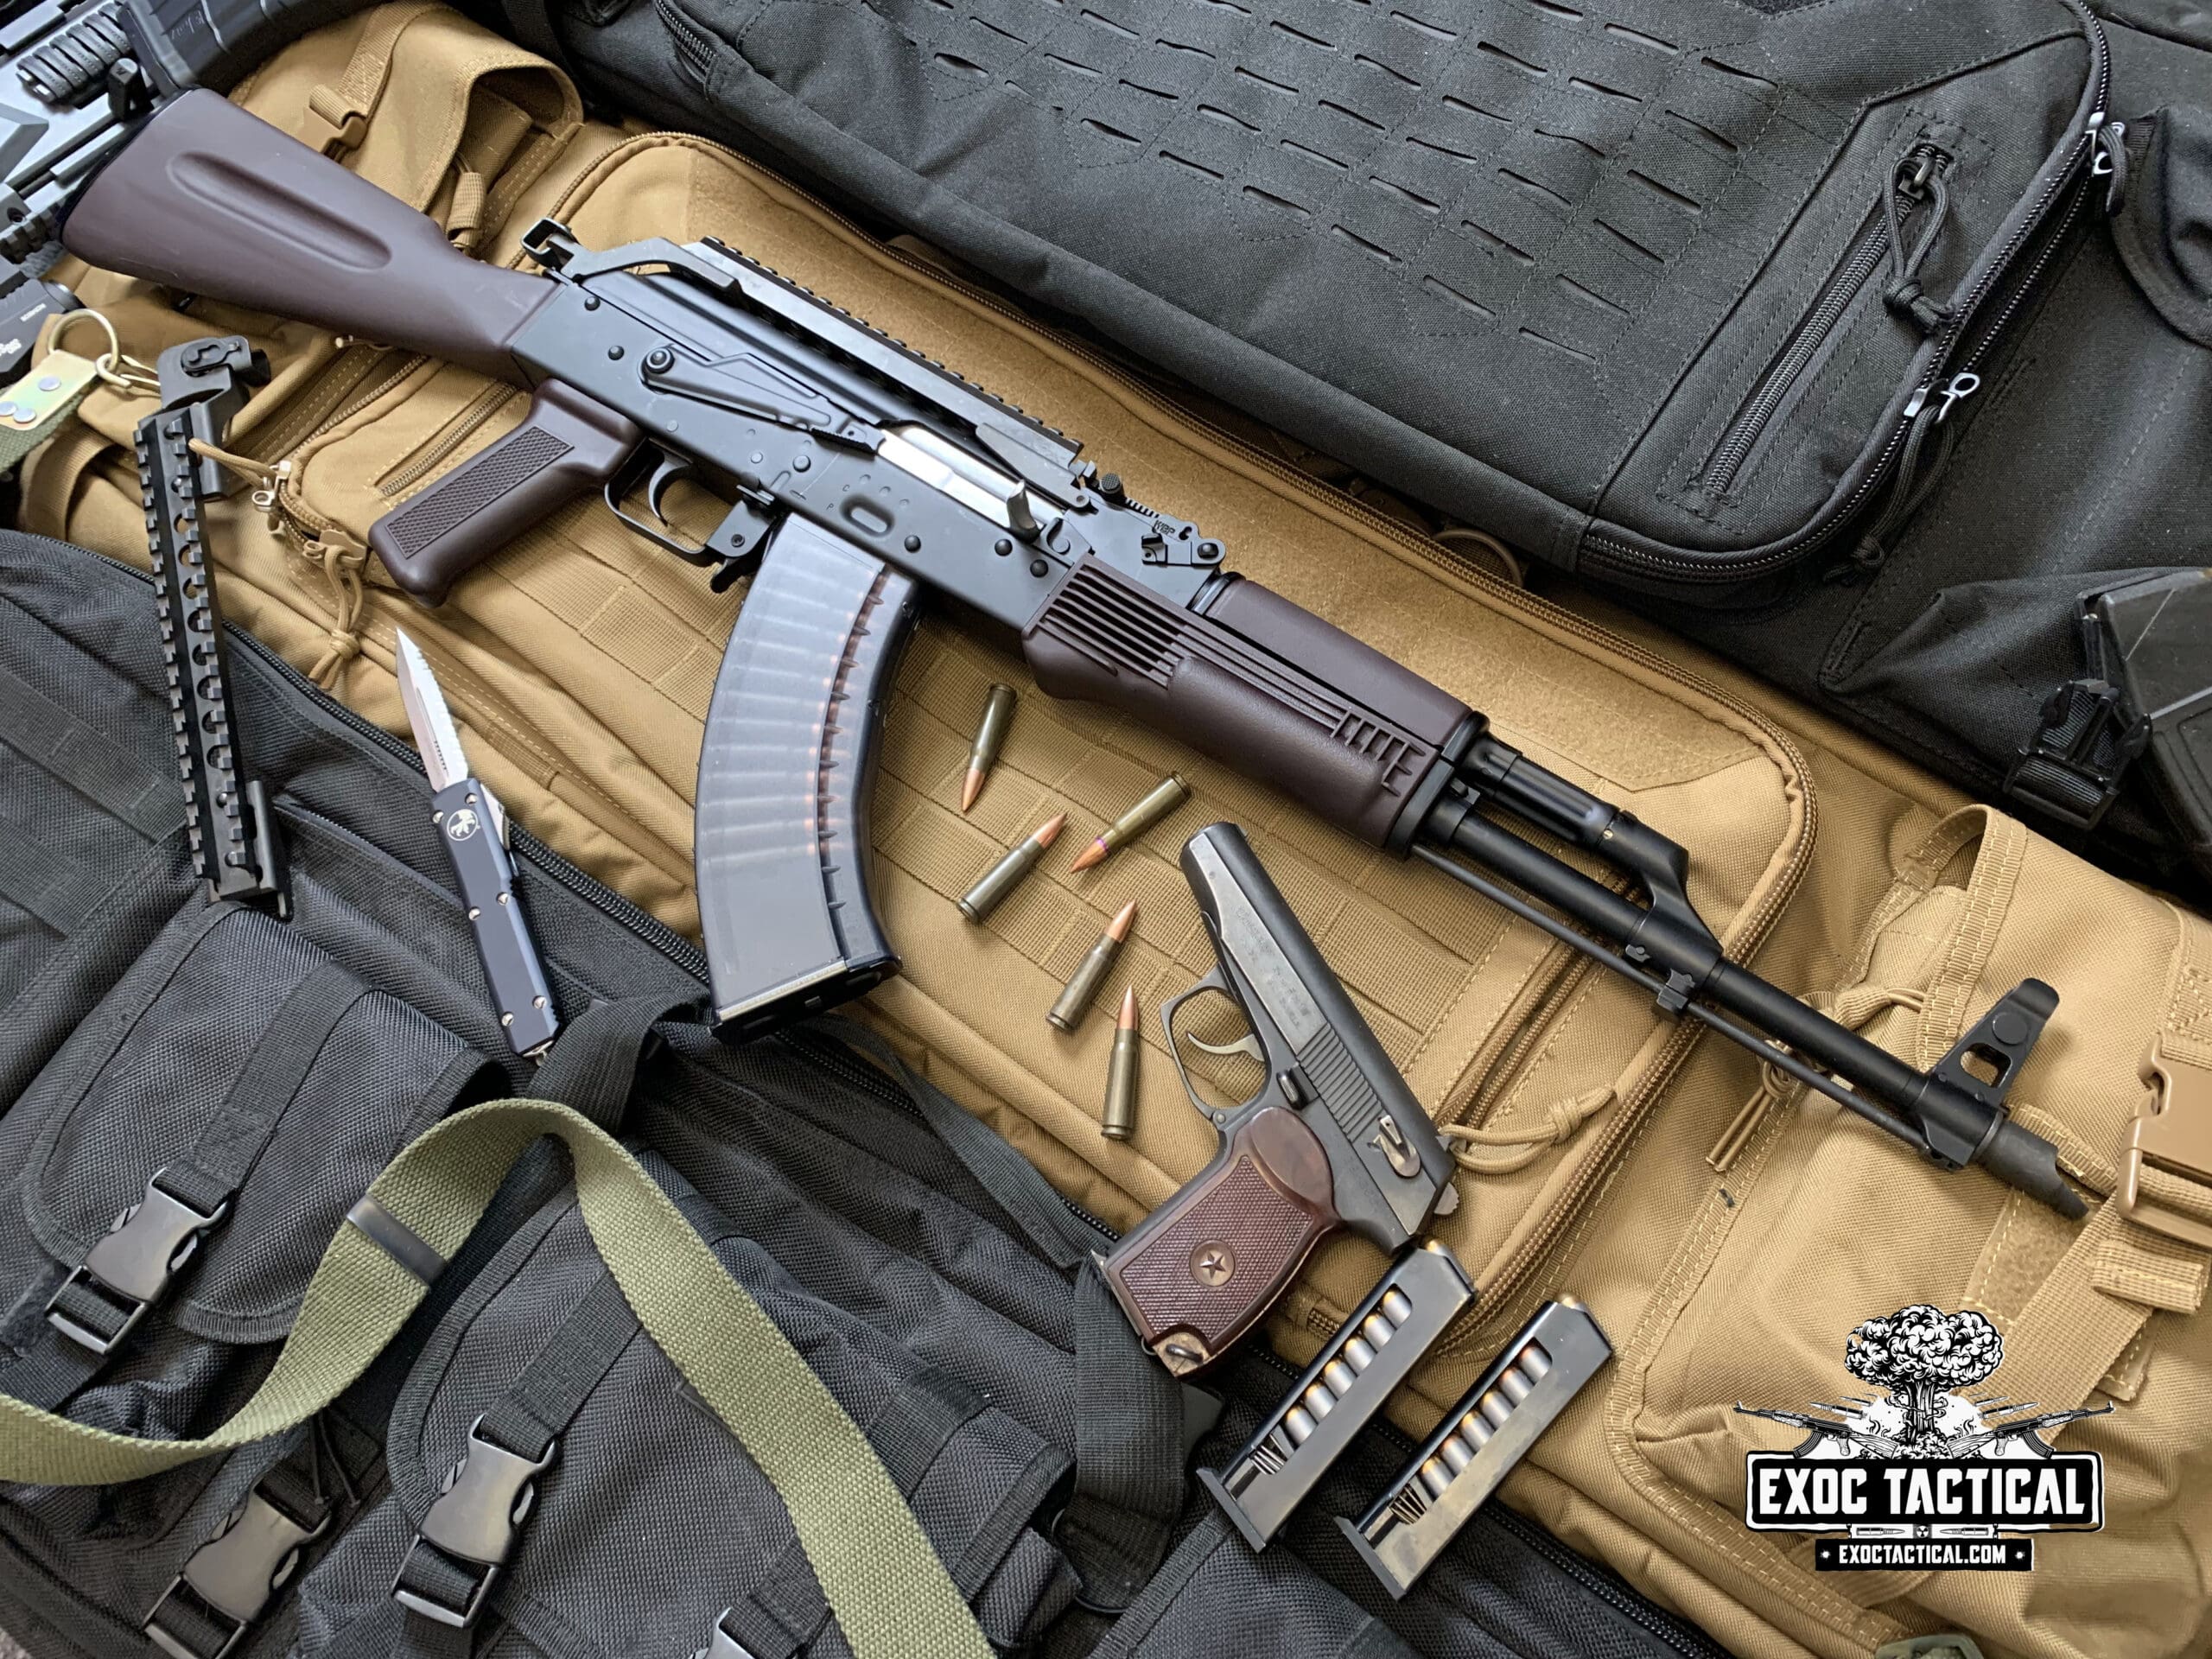 Our Polish WBP Fox AK-47